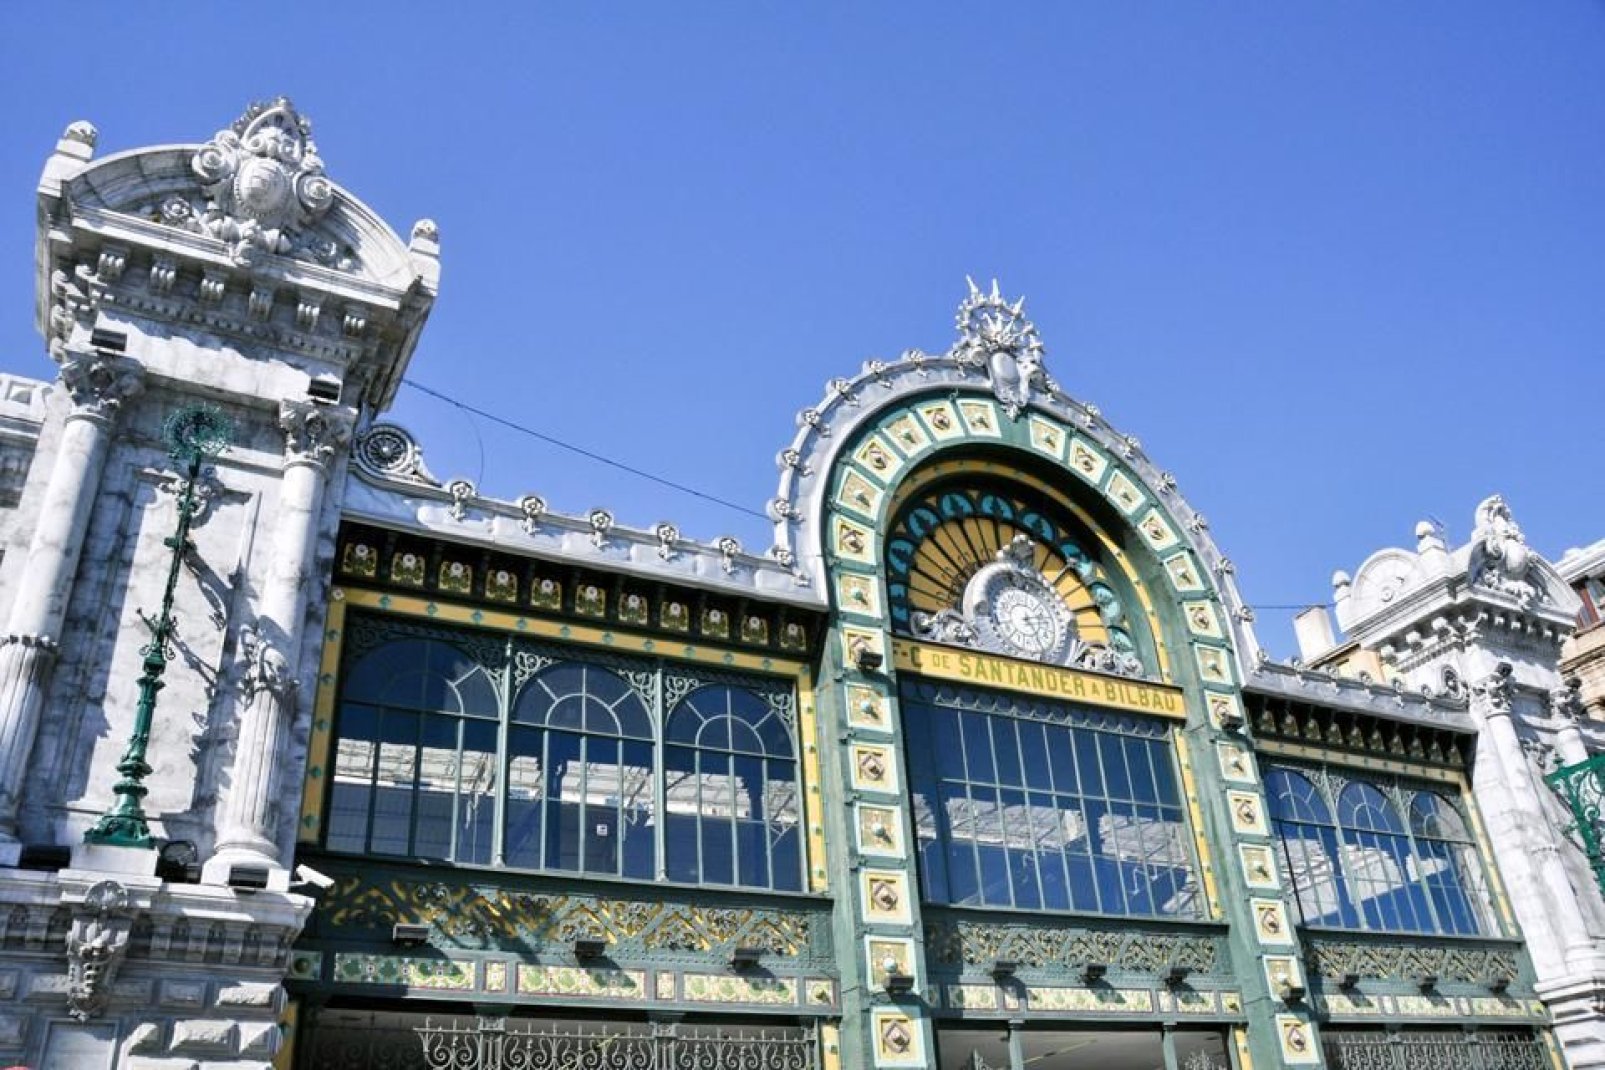 La estación Concordia, erigida en 1902, es un edificio único de estilo Art Nouveau. Forma parte del patrimonio de la «Belle Époque» de Bilbao.